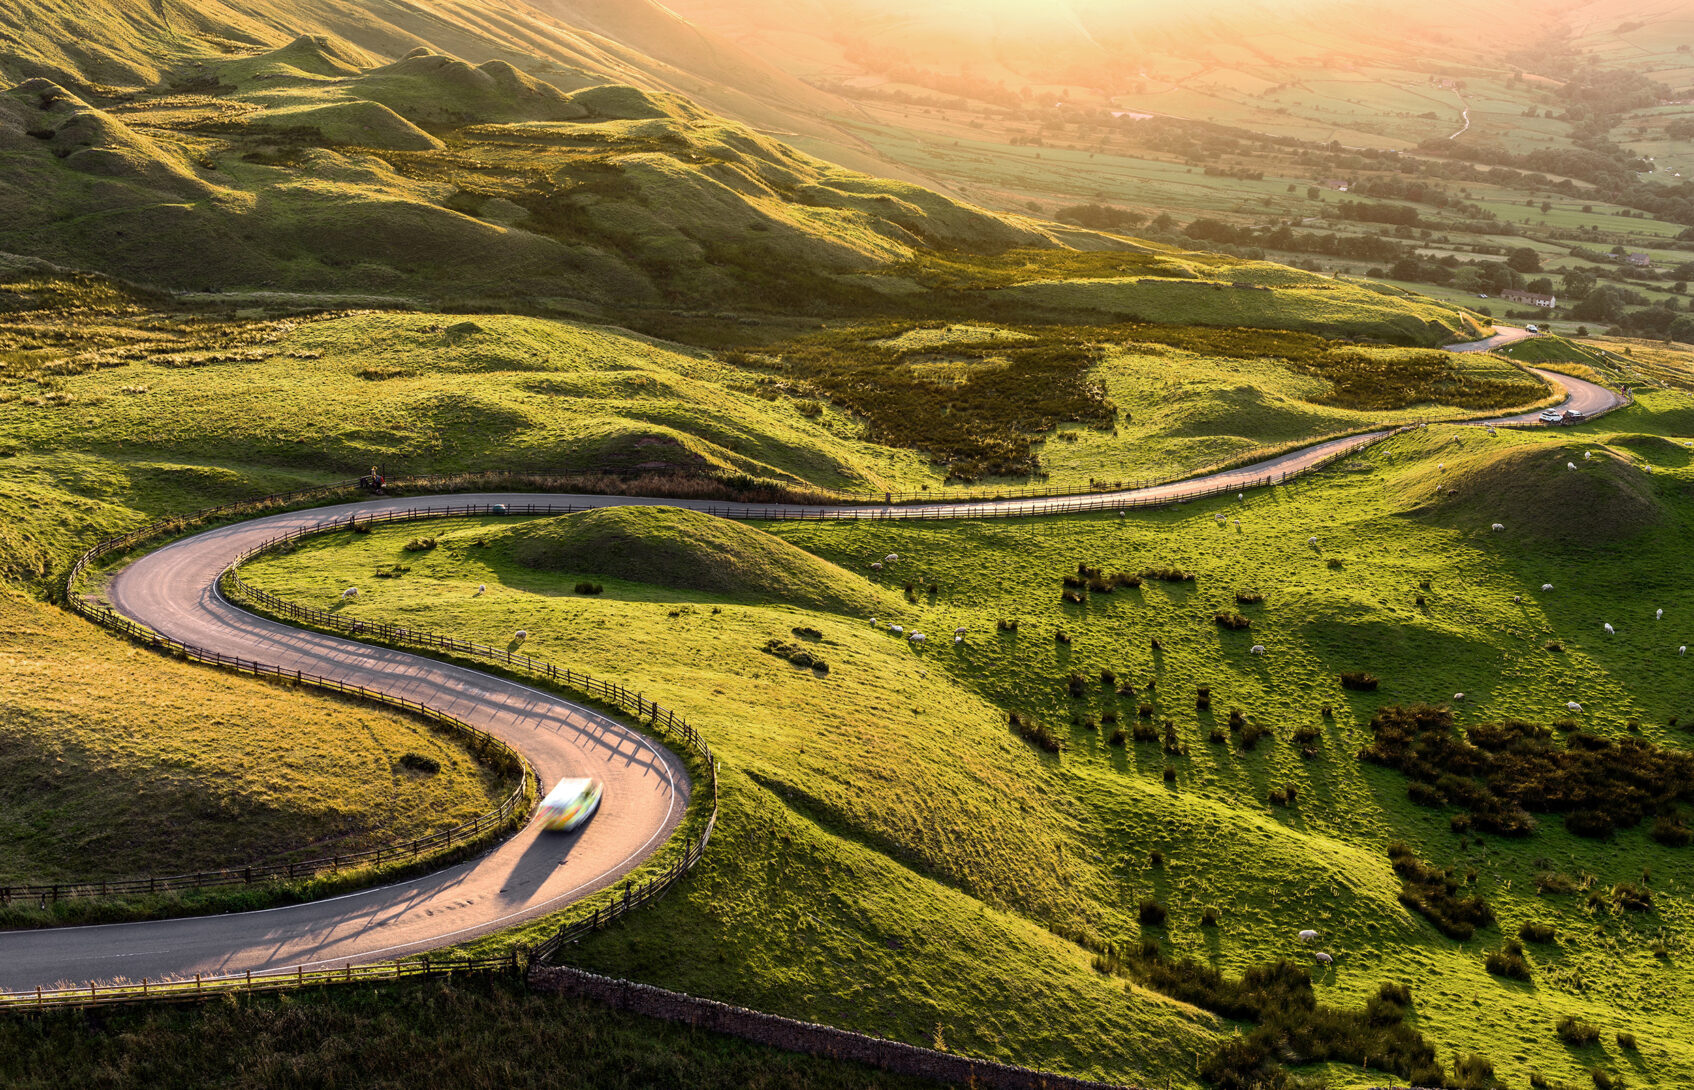 A curvy road passes over hills